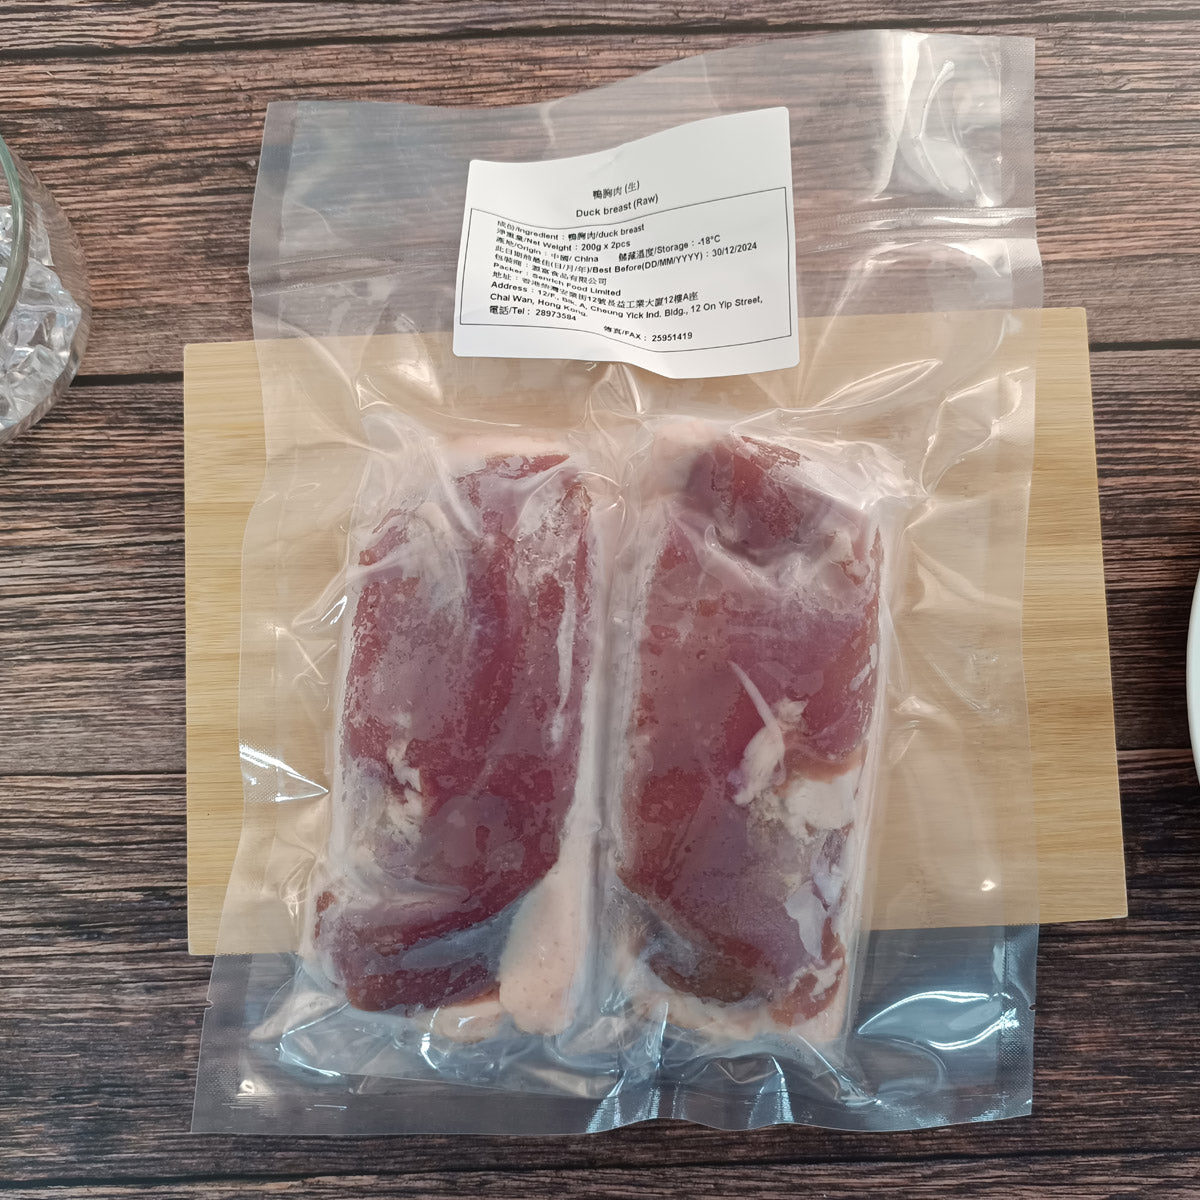 鴨胸肉 (生) (約200g x 2包) (約400g) (急凍-18°C)